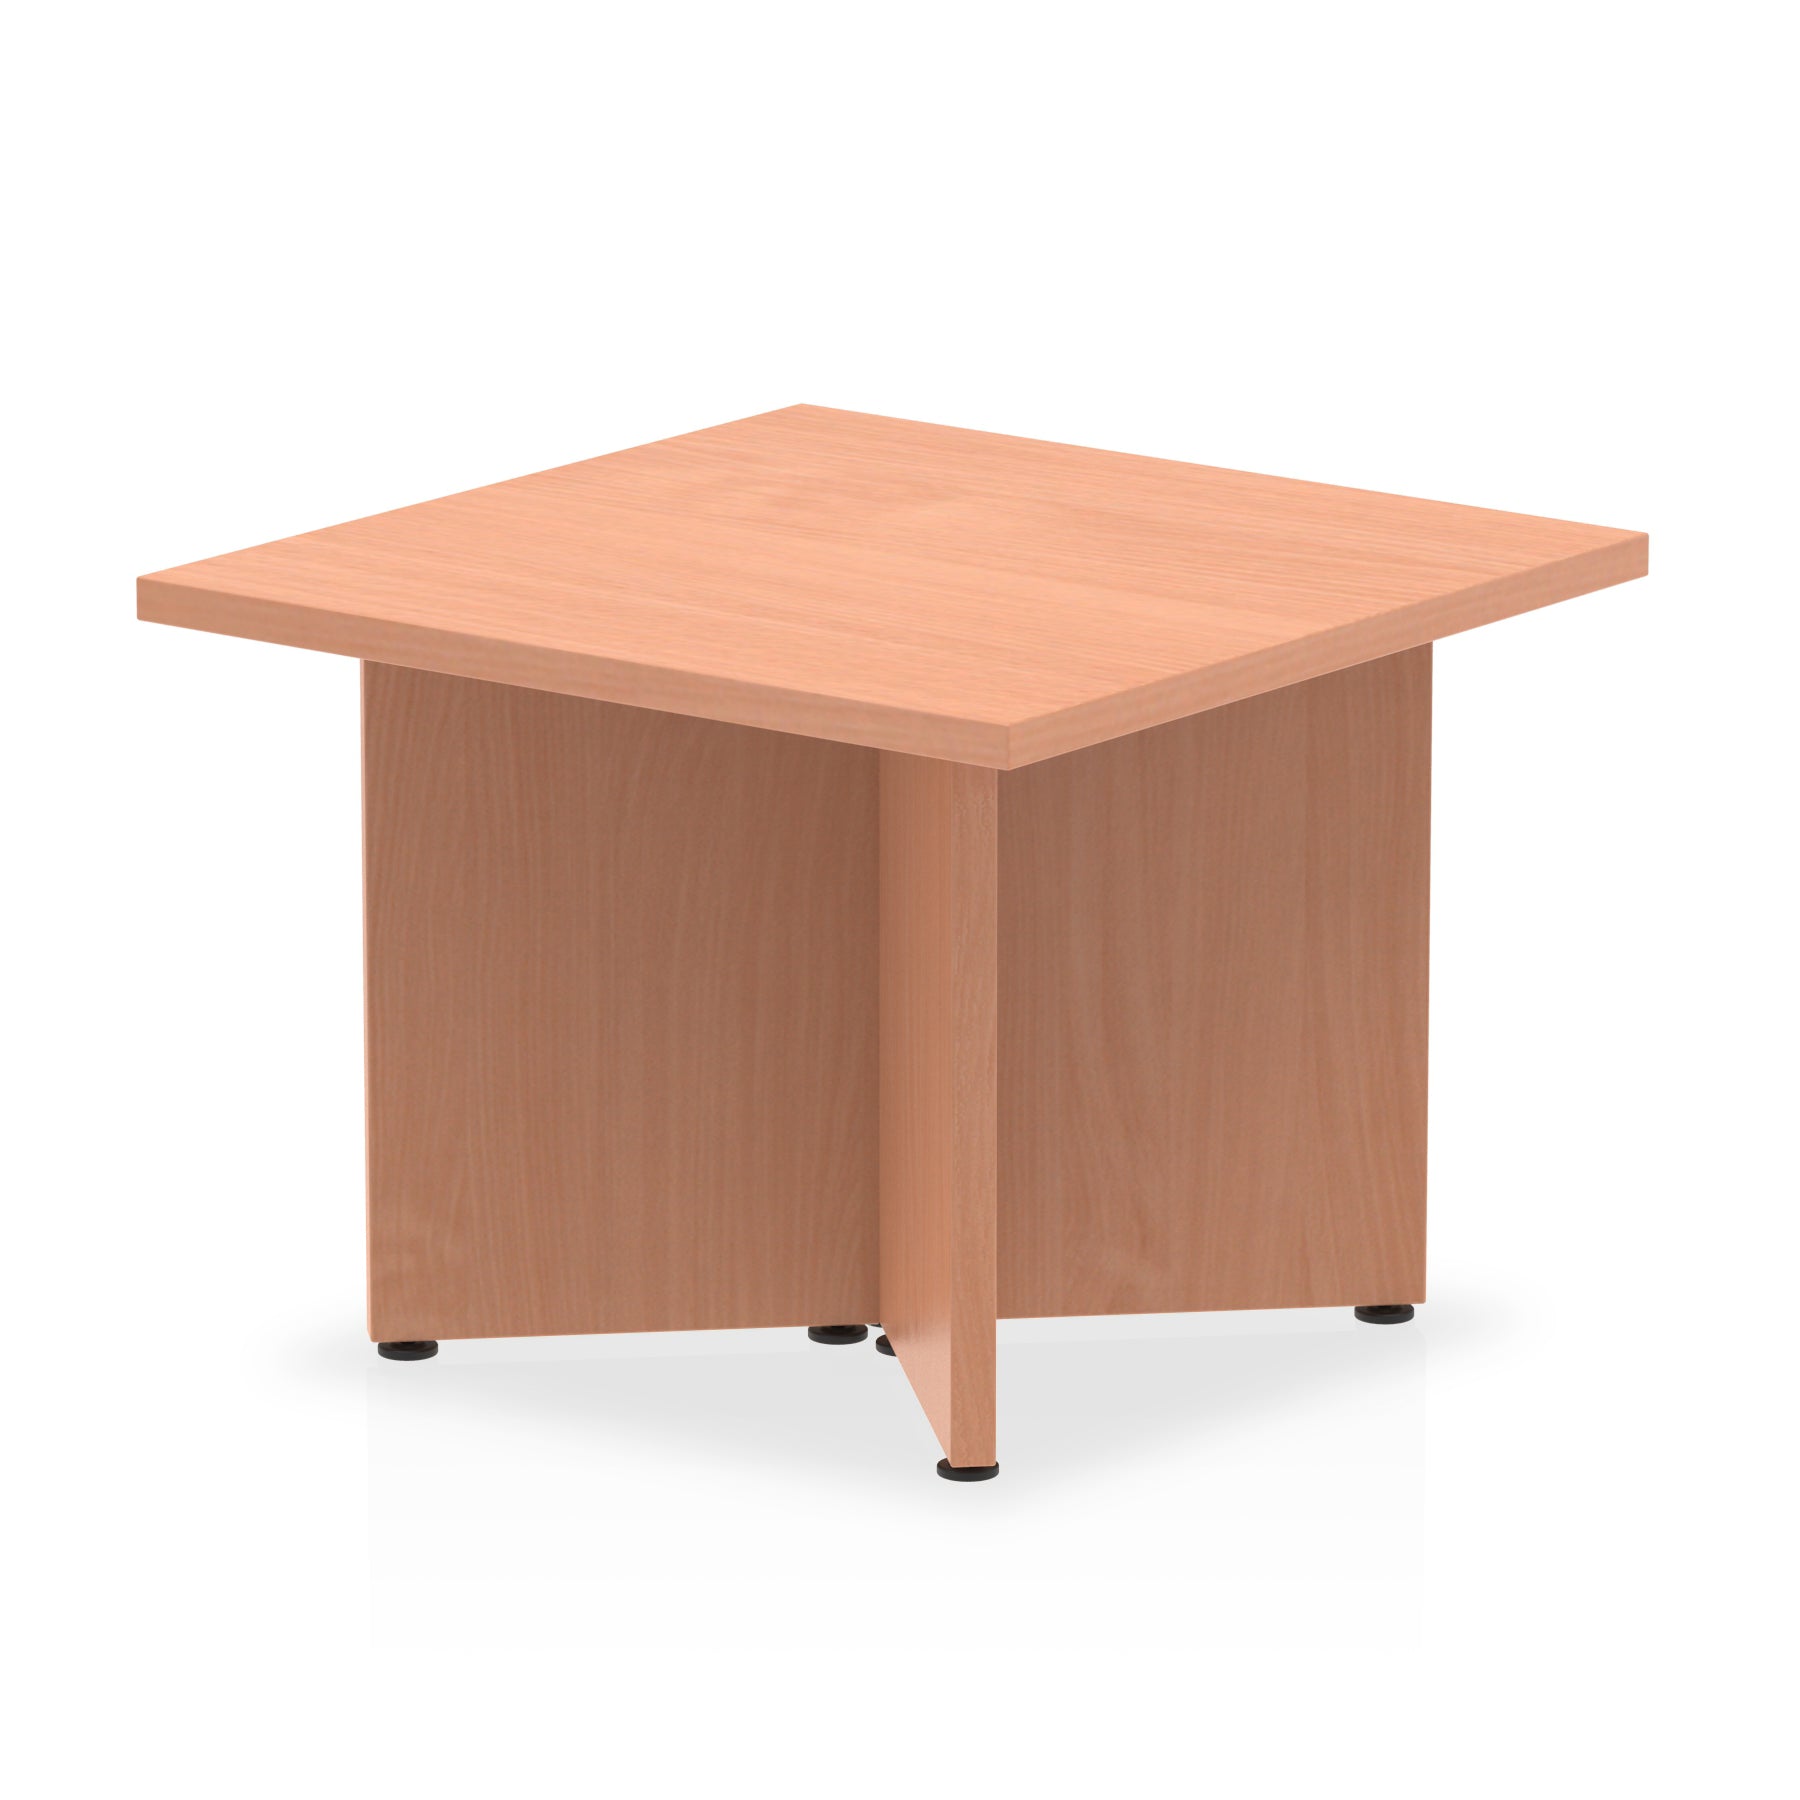 Photos - Dining Table Dynamic Office Solutions Impulse Coffee Table Arrowhead Leg I003420 